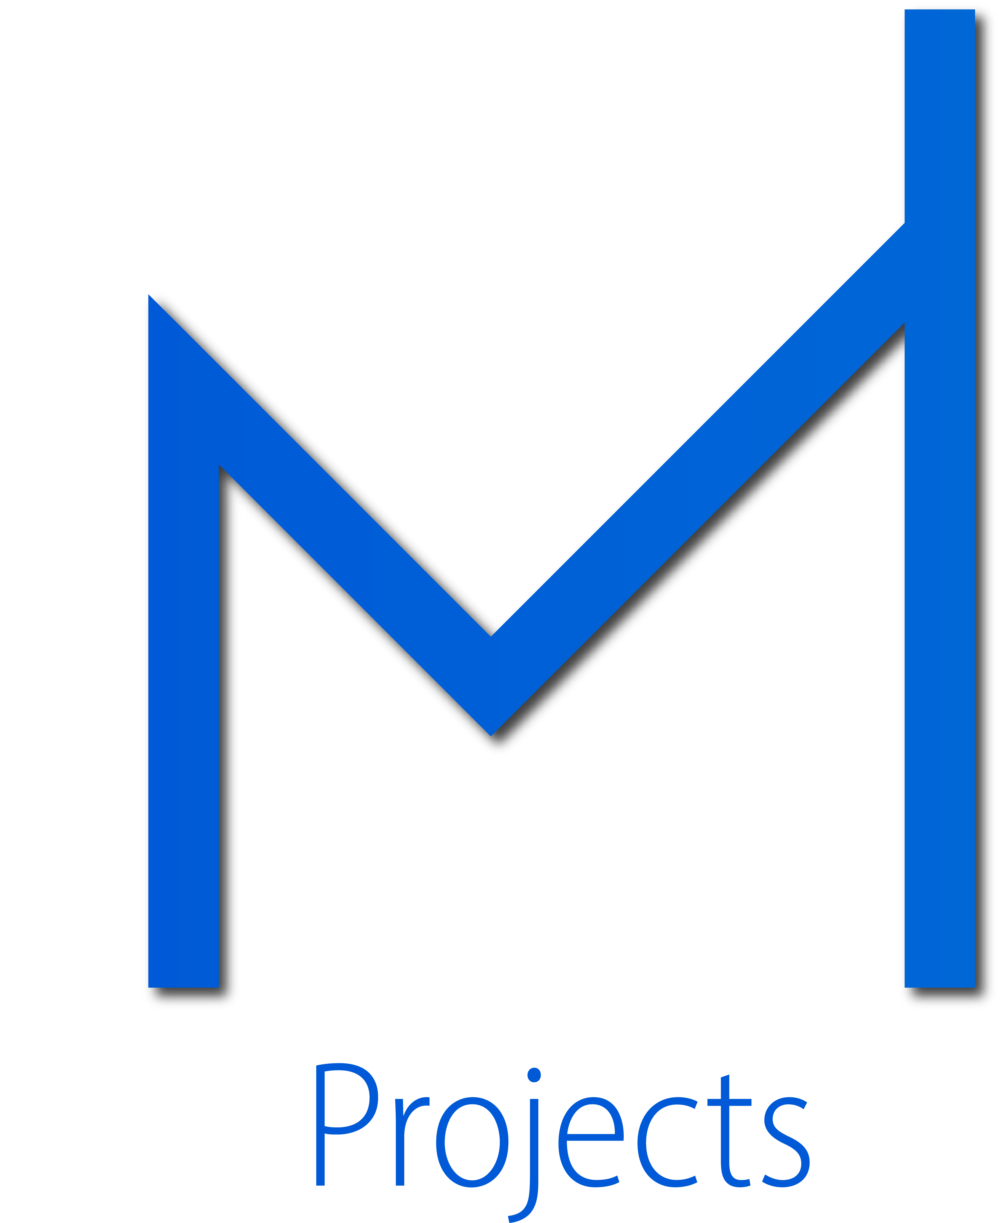 MM-Projects.pl Tworzymy strony WWW dla Ciebie i Twojego biznesu